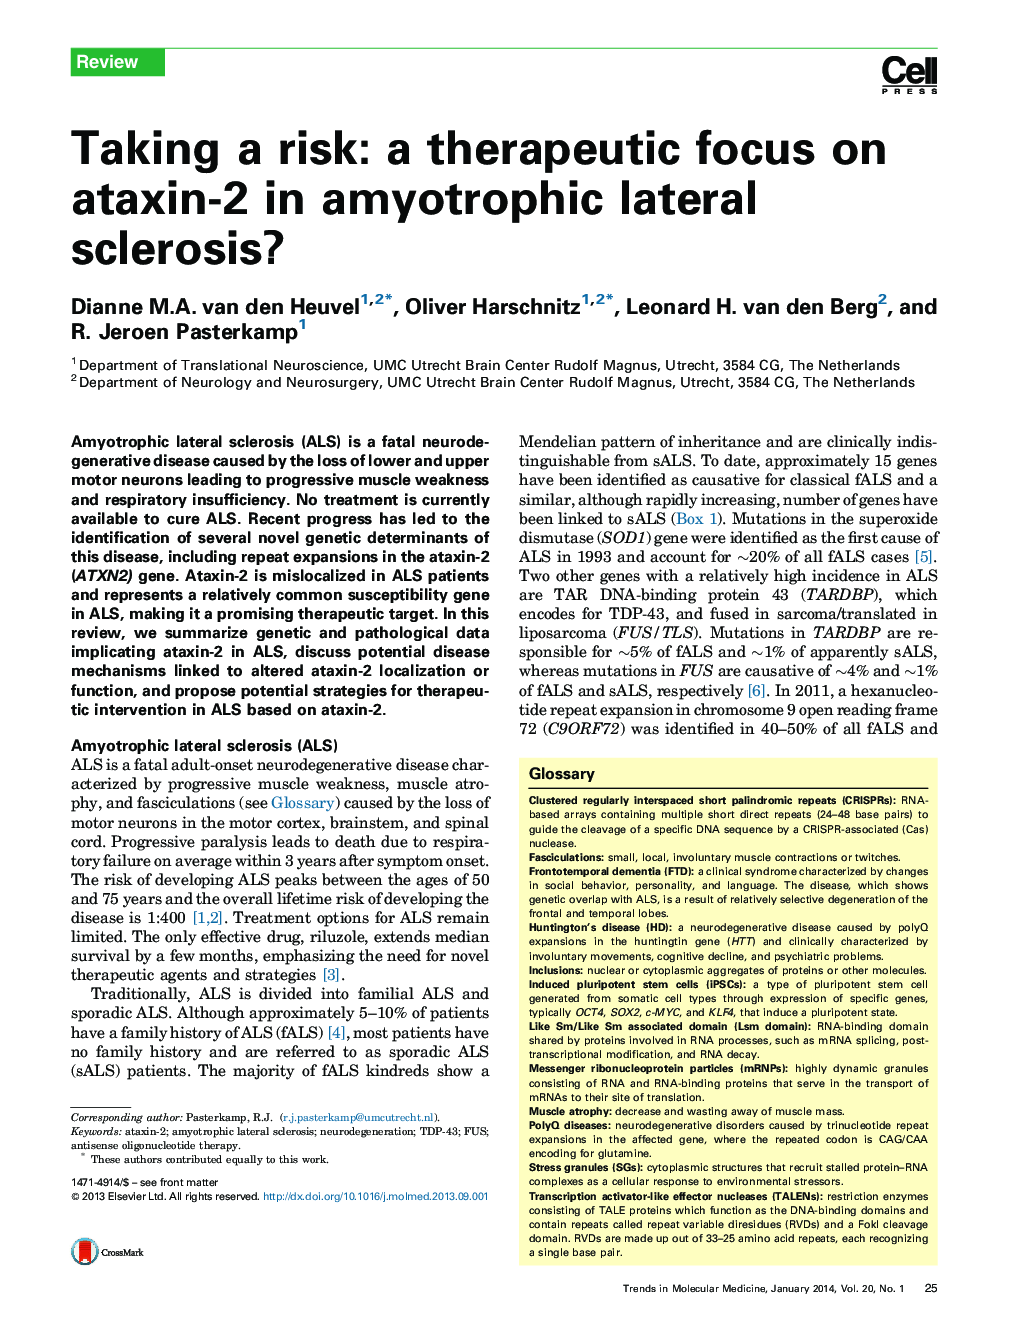 با توجه به خطر: تمرکز درمانی بر روی اتاکسین -2 در اسکلروز جانبی آمیوتروفی؟ 